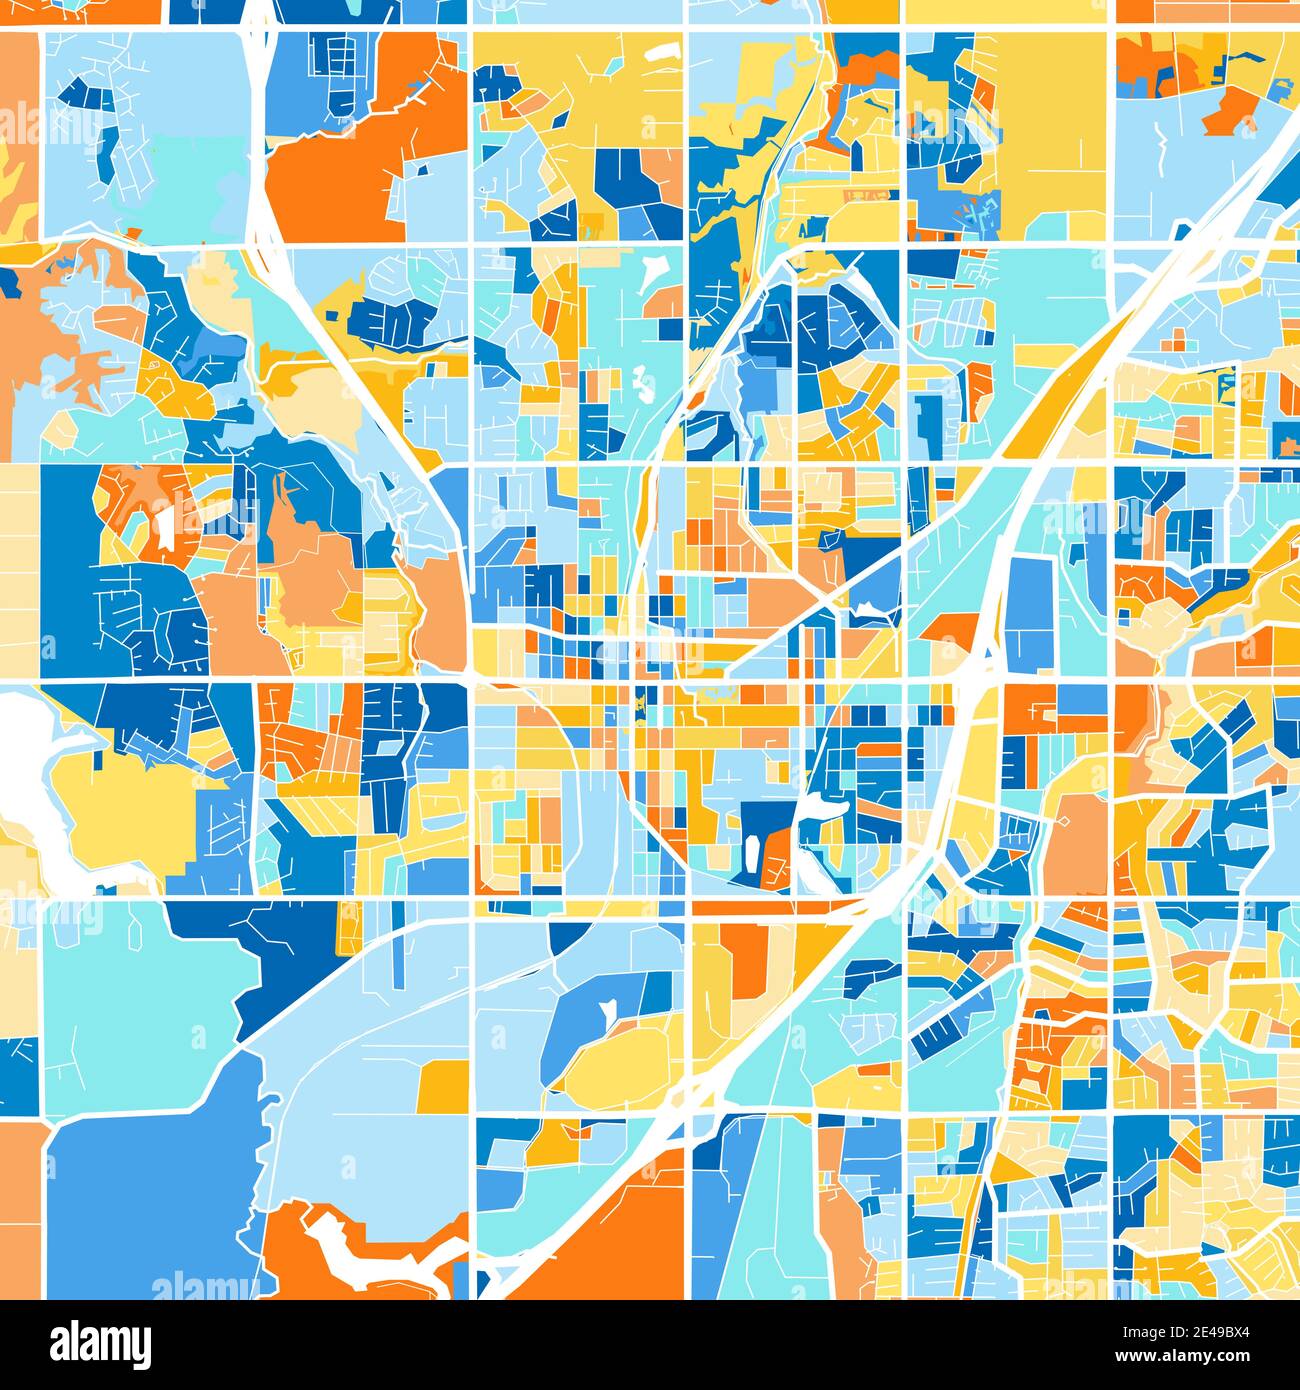 Carte d'art en couleur d'Olathe, Kansas, UnitedStates dans les bleus et les oranges. Les gradations de couleurs dans la carte Olathe suivent un motif aléatoire. Illustration de Vecteur